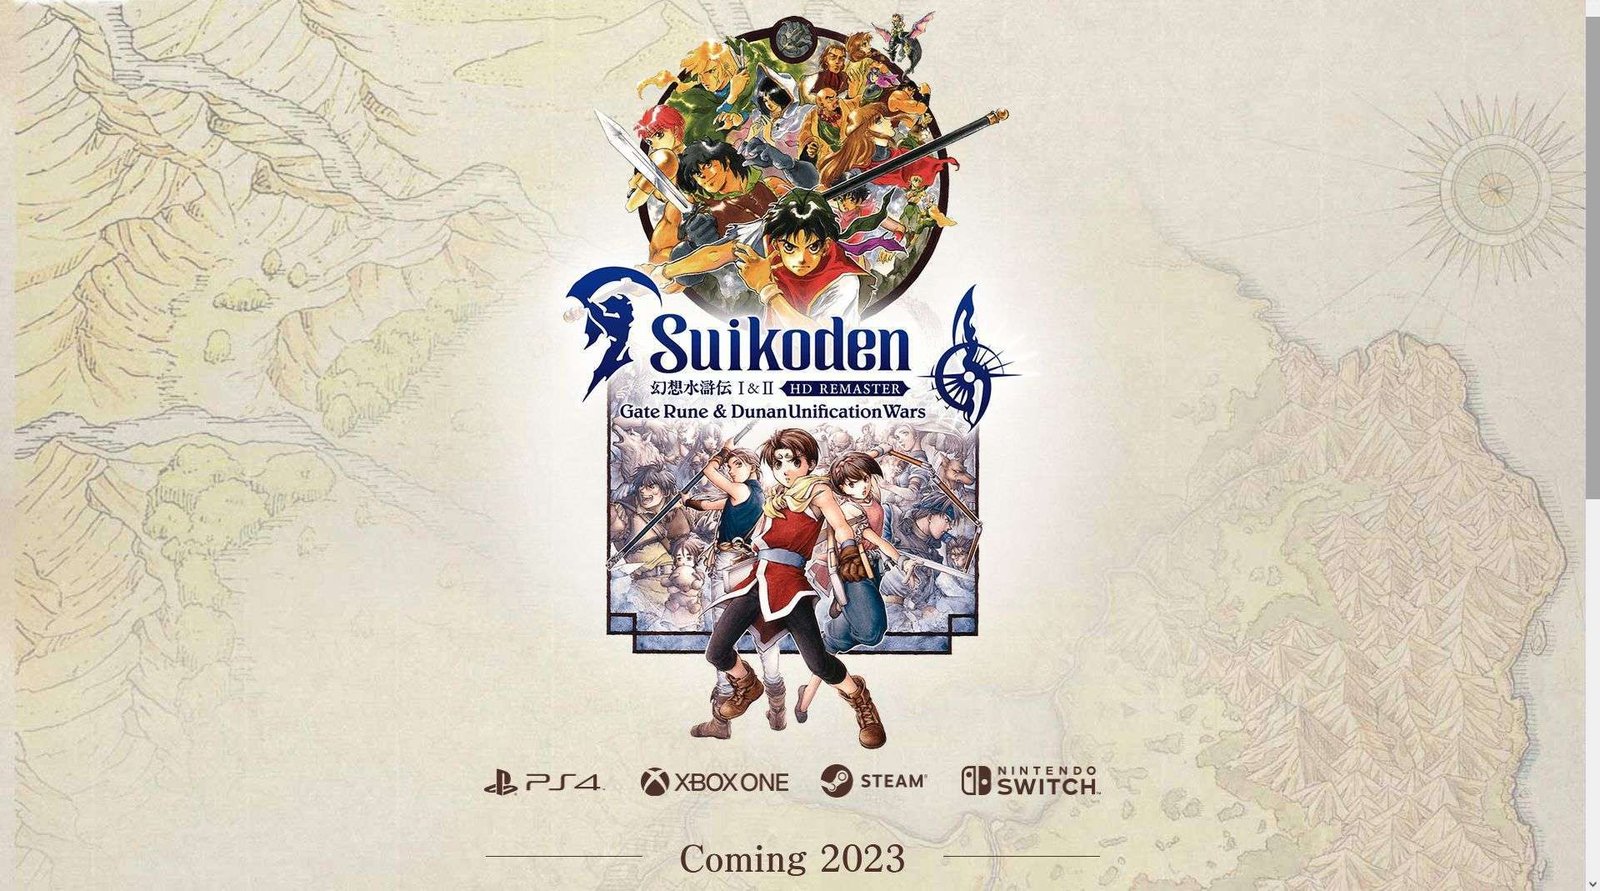 الإعلان على النسخة المحسنة من الجزء الأول والثاني لـ Suikoden